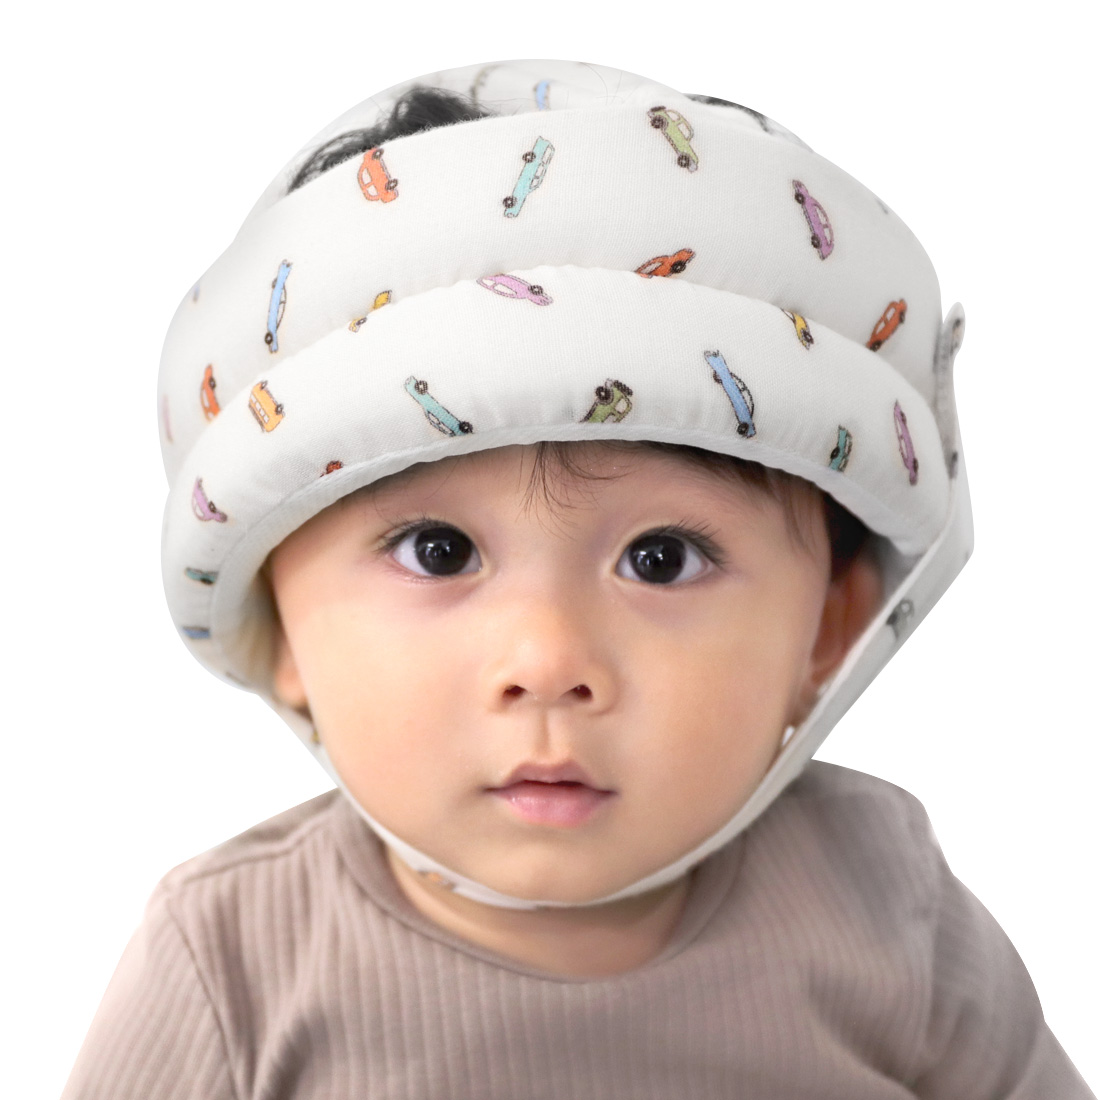 ケラッタ) イブル ベビーヘルメット 頭 ごっつん防止 赤ちゃん 転倒 